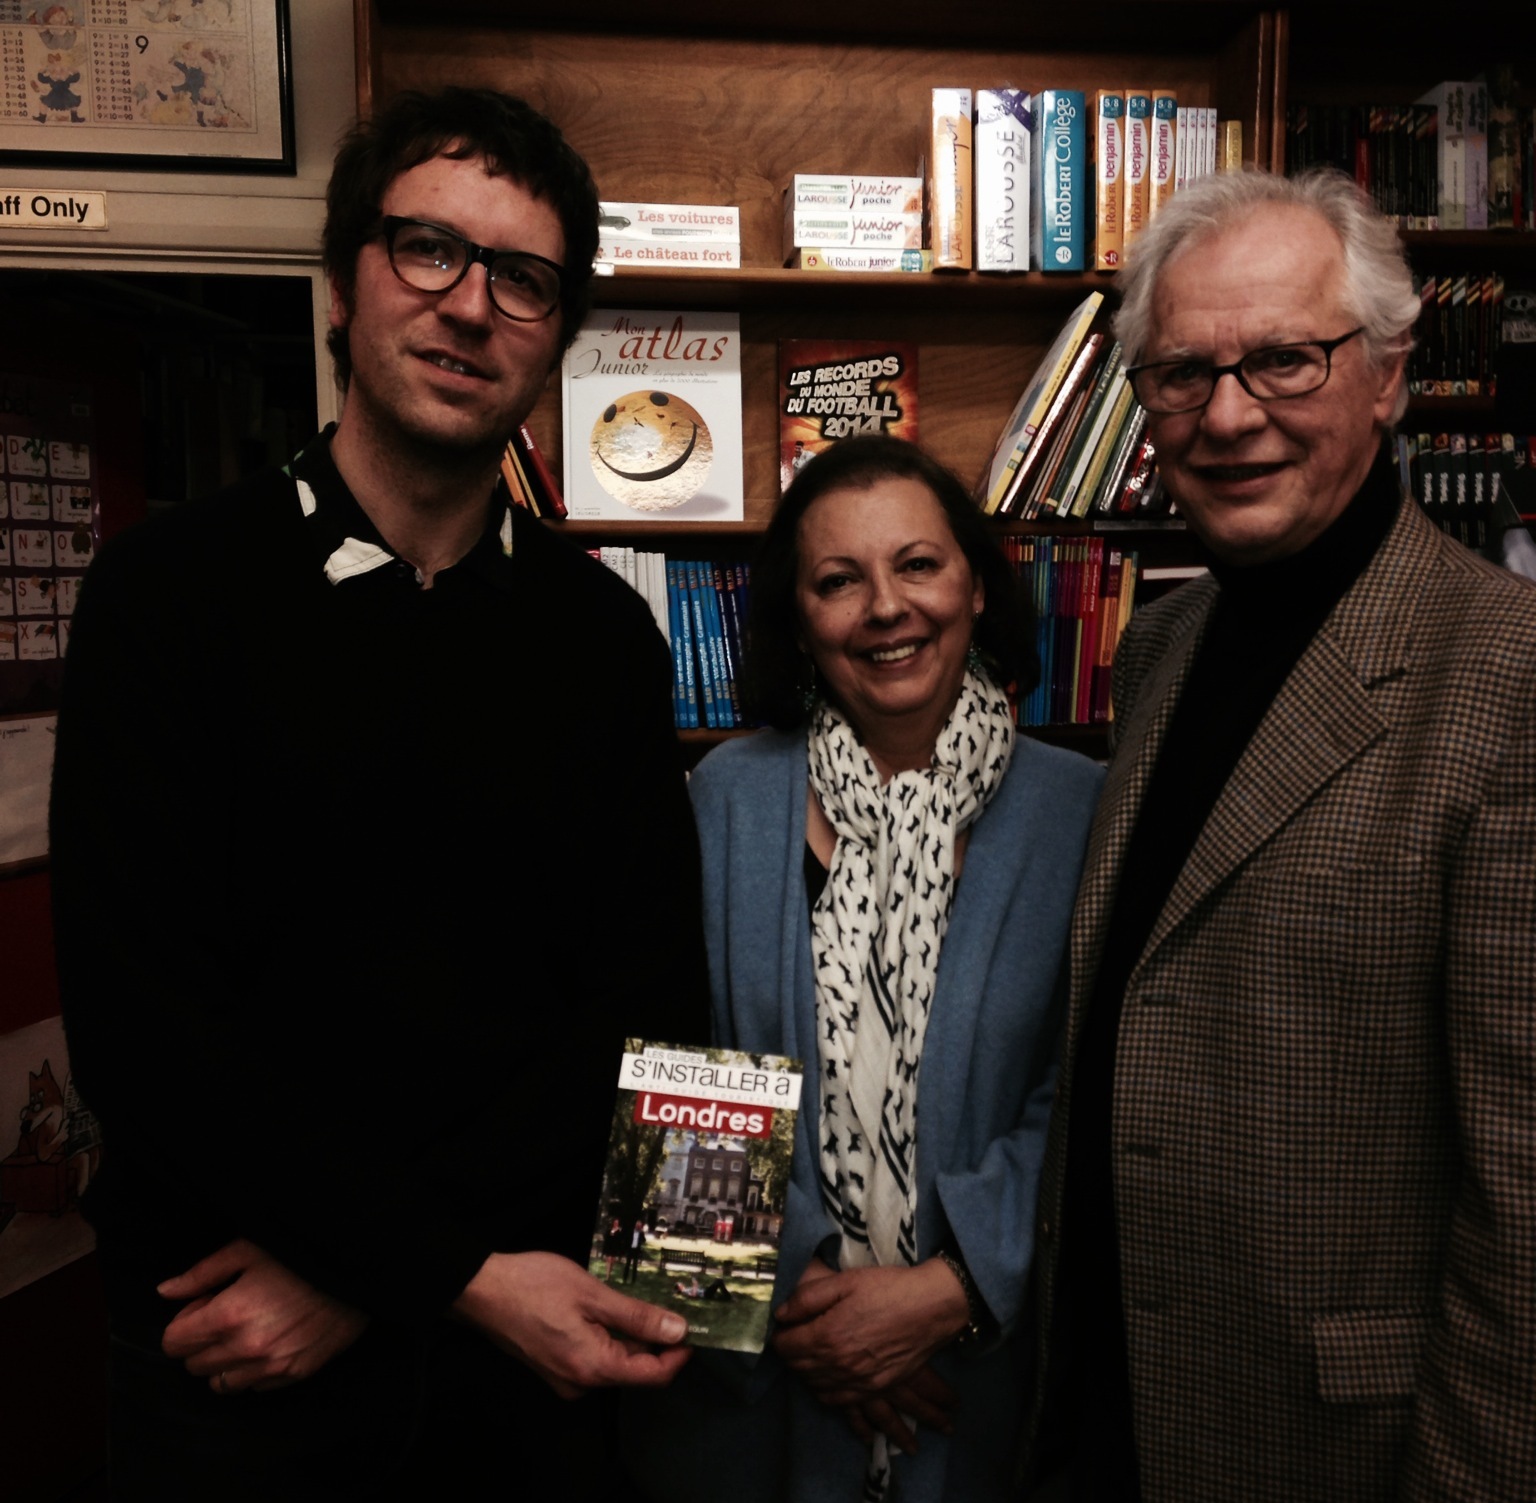 Samuel Pétrequin présente "S'installer à Londres" aux côtés de Laure et Robert Zaigue à la French Bookshop